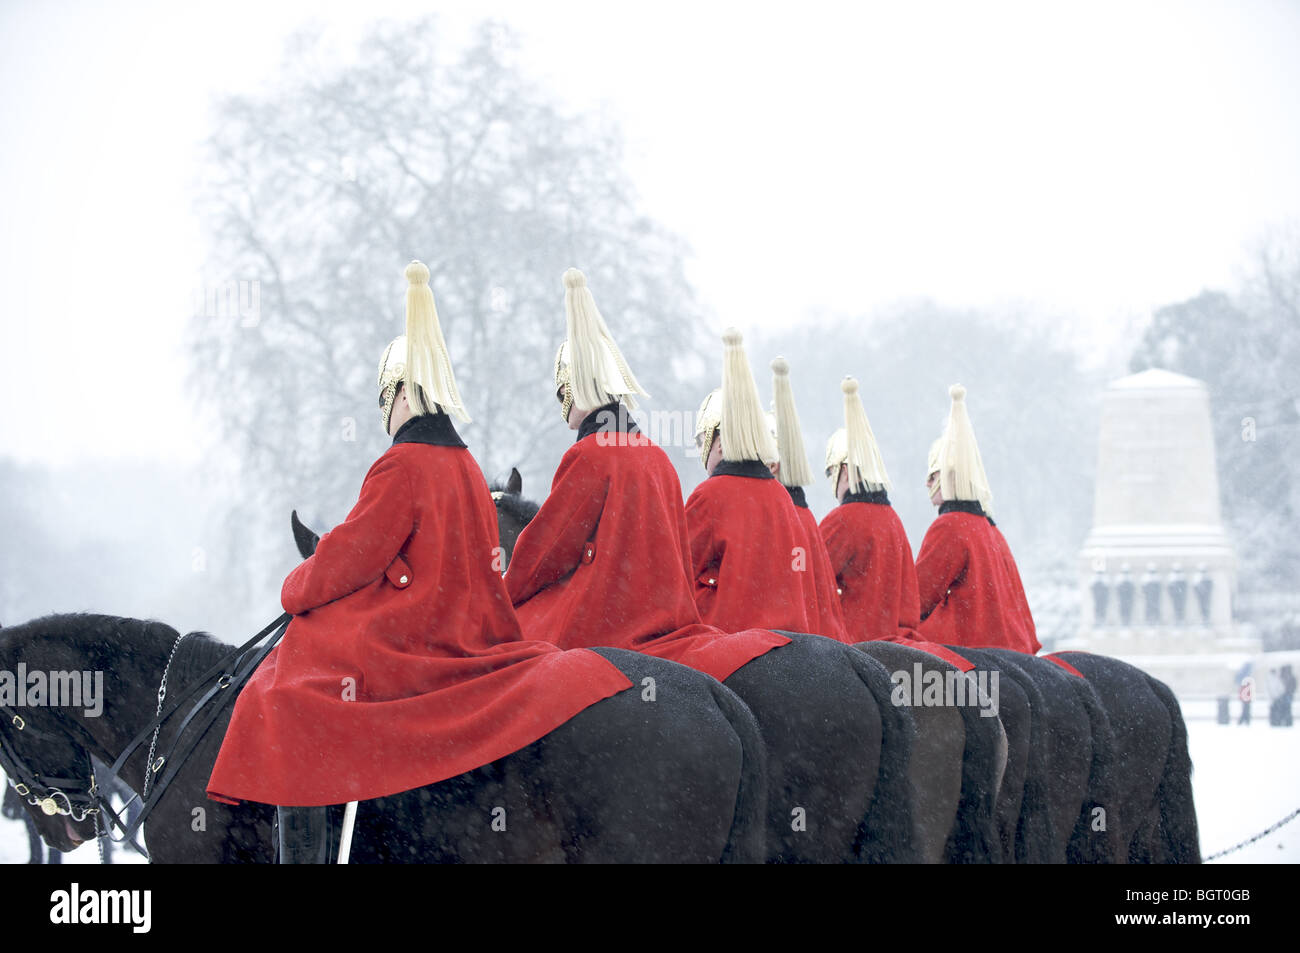 La vie de Queen's Guards sur des chevaux dans la neige, Londres, Angleterre Banque D'Images